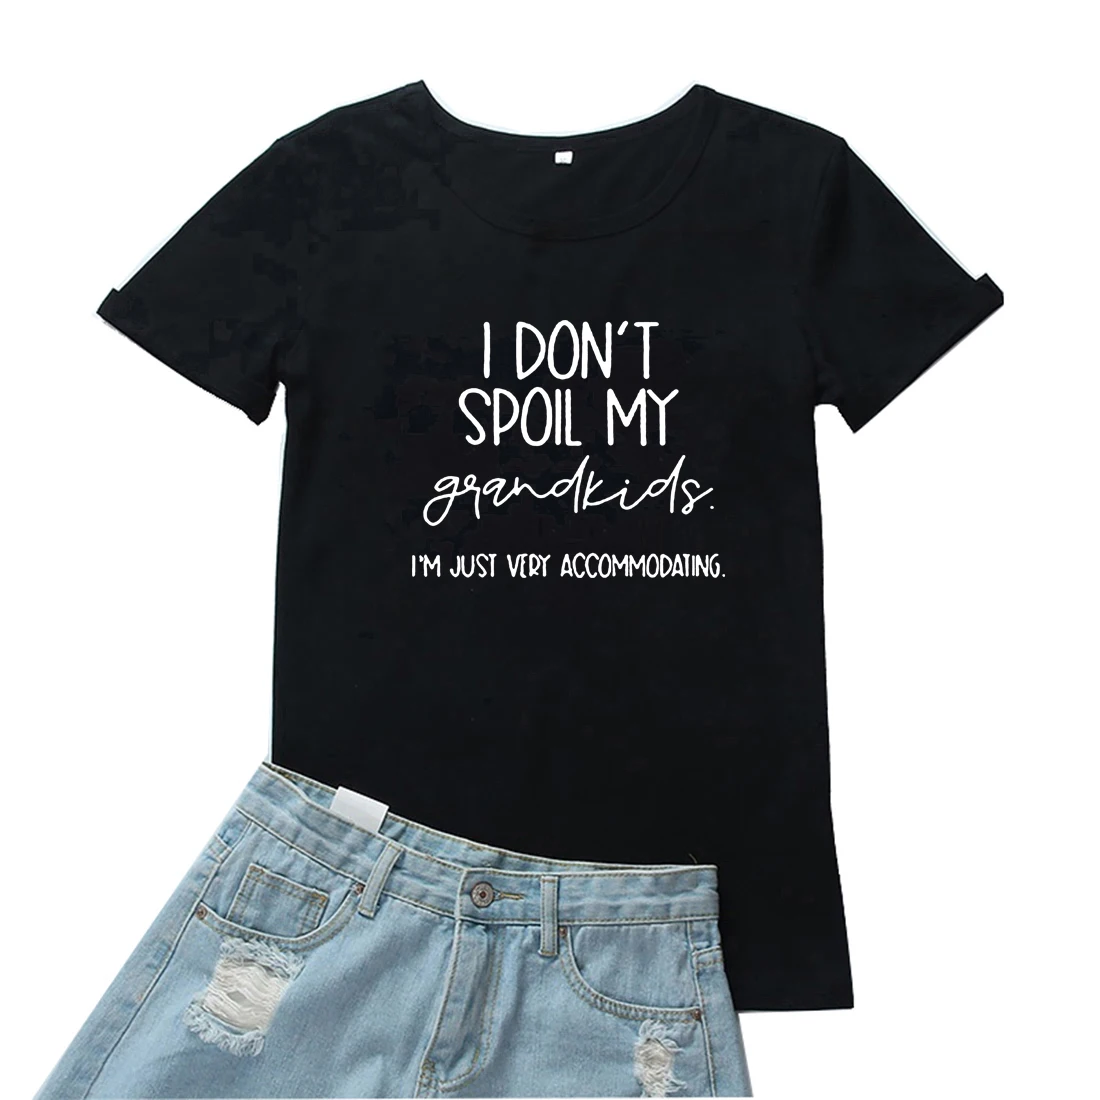 

Футболки с надписью «I Don't bad My Grandkids», женская футболка с надписью «I'm просто очень удобная женская футболка», забавная женская футболка с надписью s